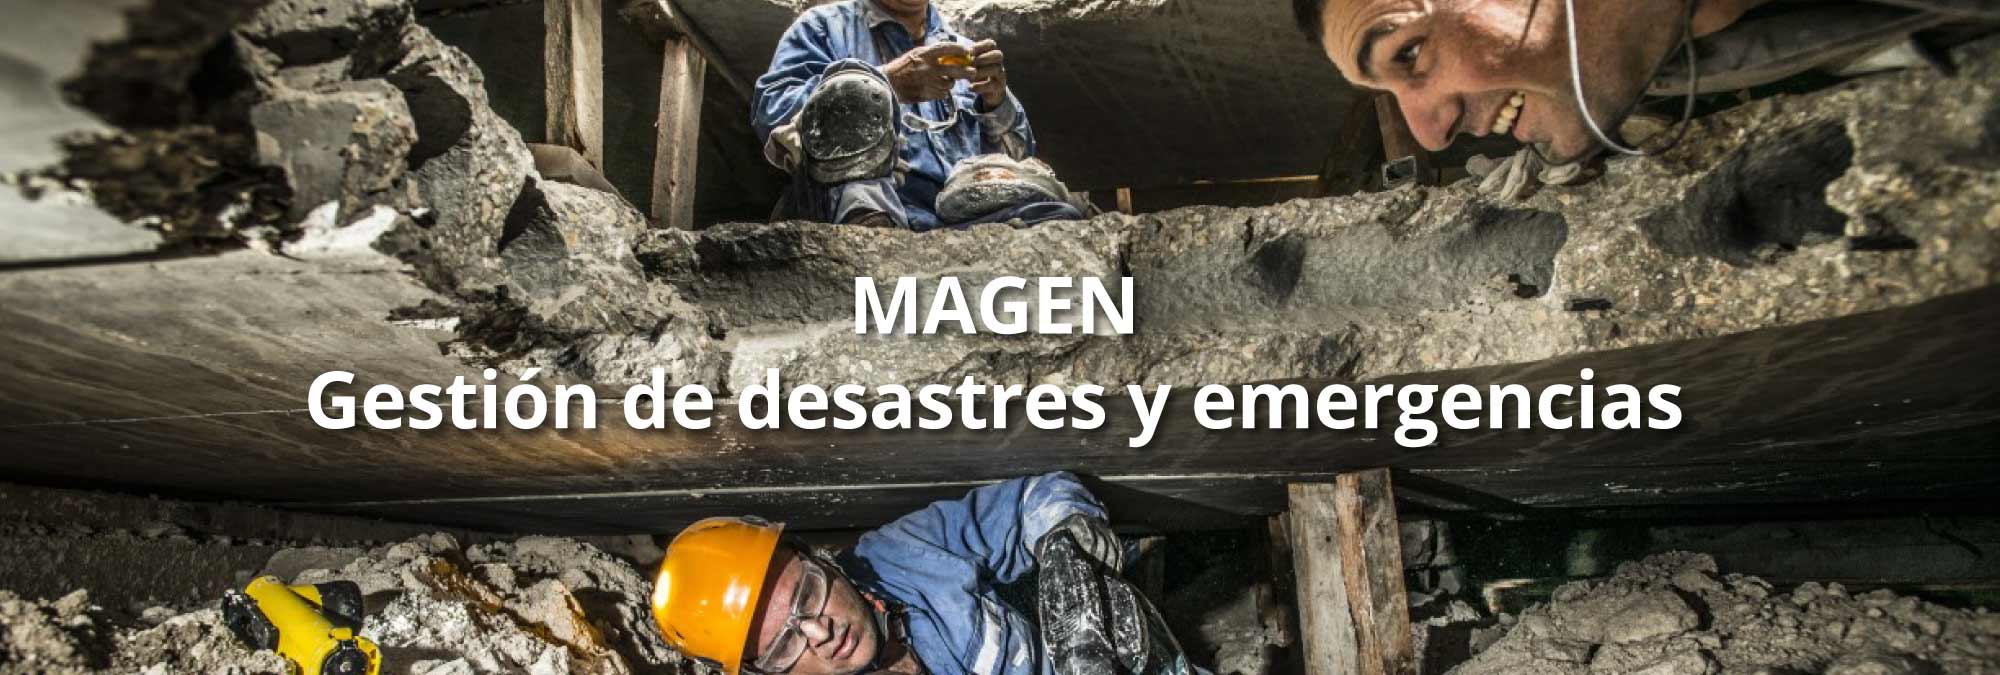 MAGEN – Gestión de desastres y emergencias